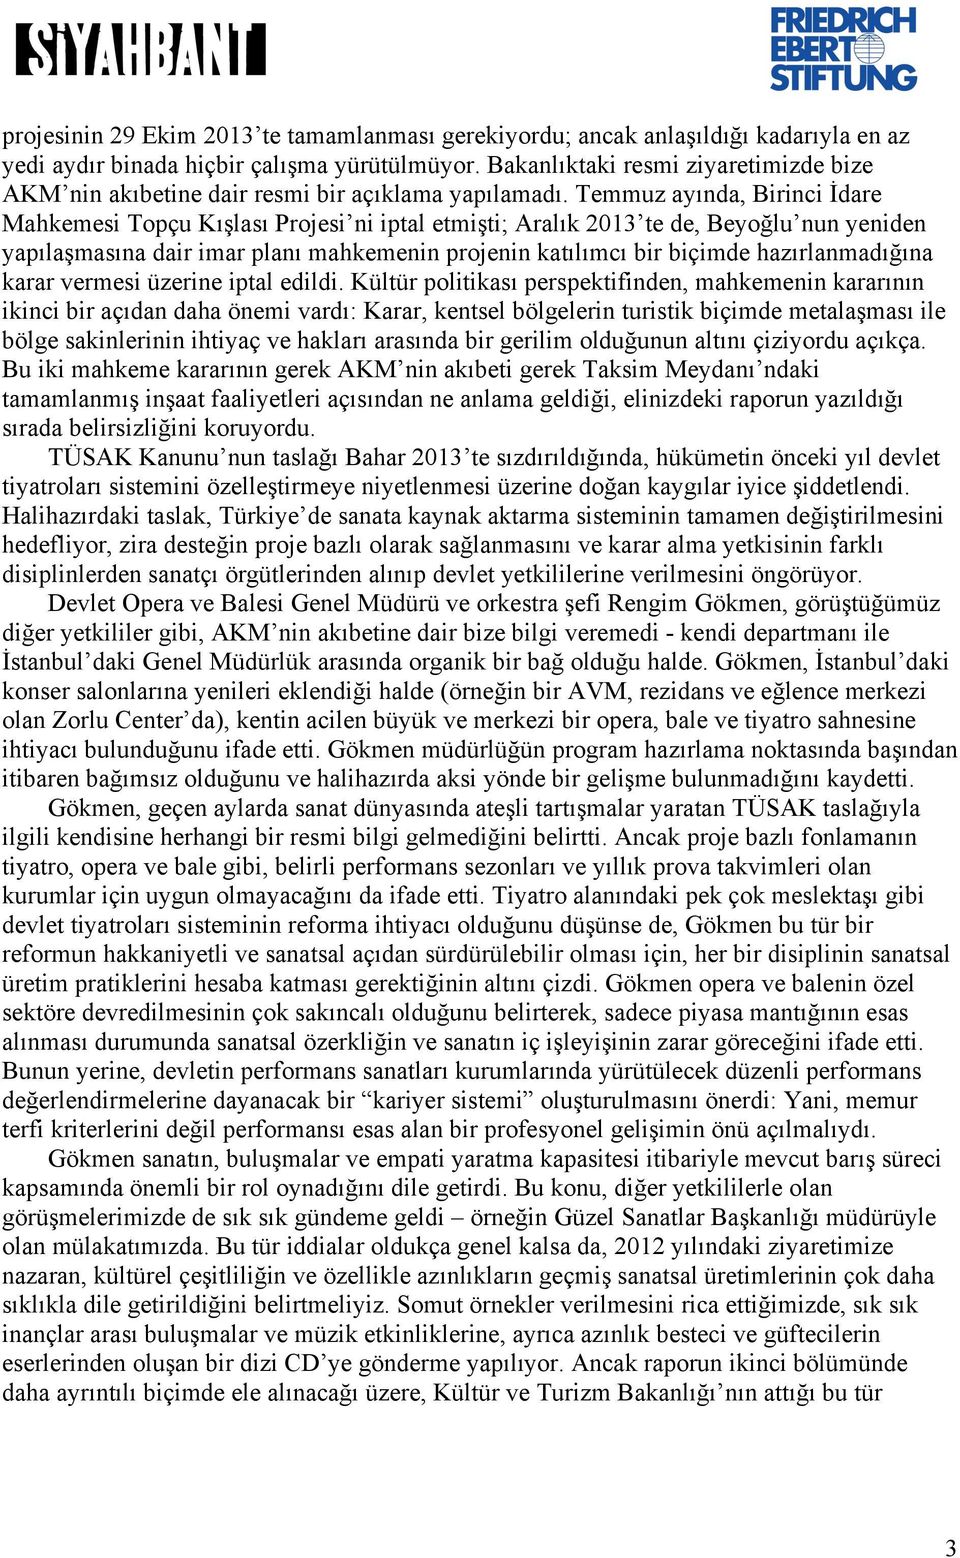 Temmuz ayında, Birinci İdare Mahkemesi Topçu Kışlası Projesi ni iptal etmişti; Aralık 2013 te de, Beyoğlu nun yeniden yapılaşmasına dair imar planı mahkemenin projenin katılımcı bir biçimde